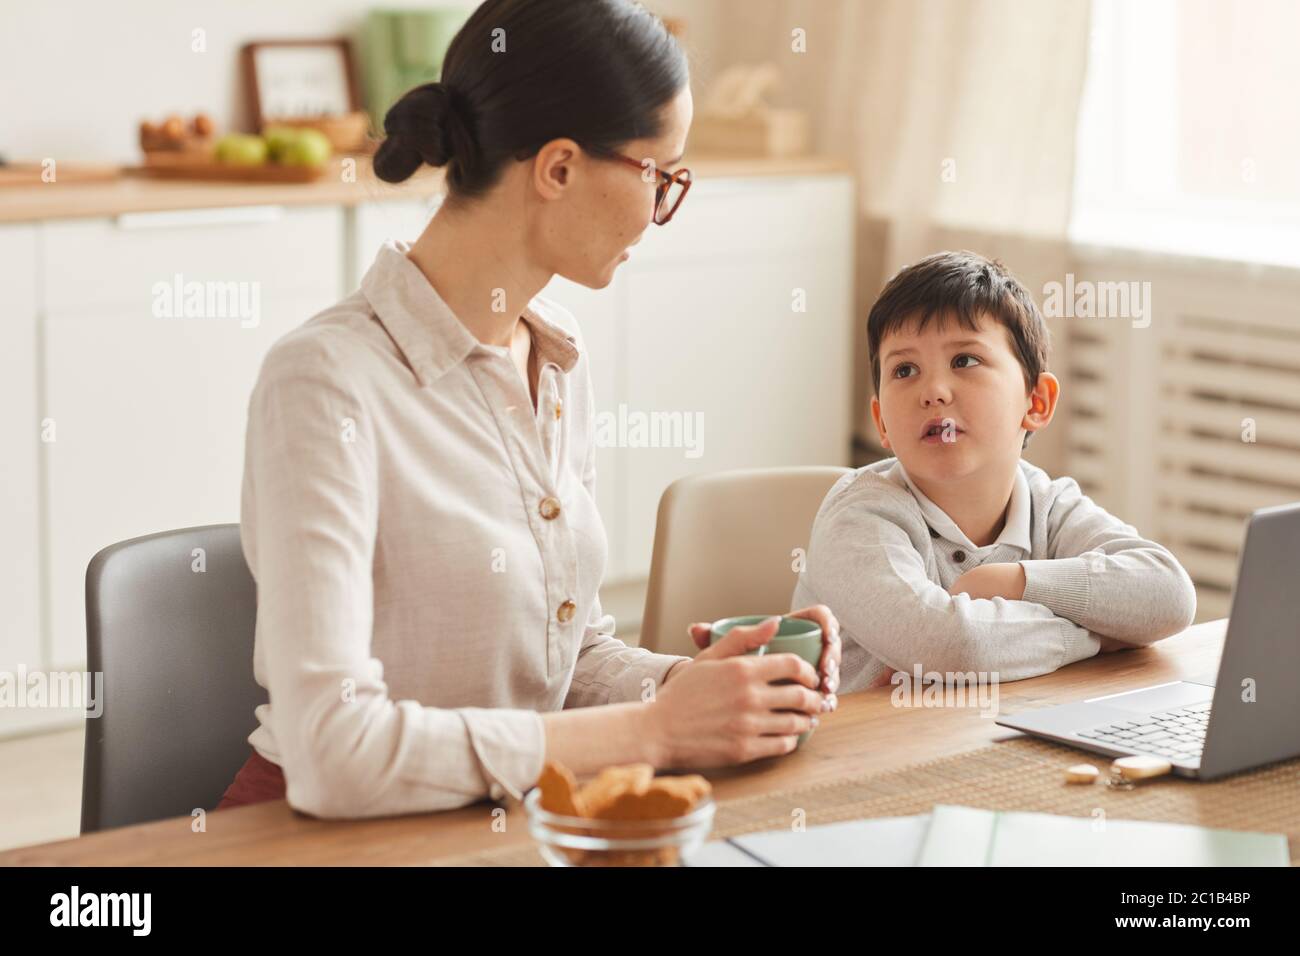 Portrait aux tons chaleureux d'une jeune mère qui parle à son fils tout en faisant ses devoirs ensemble assis à une table dans un intérieur confortable de cuisine, espace pour les copies Banque D'Images